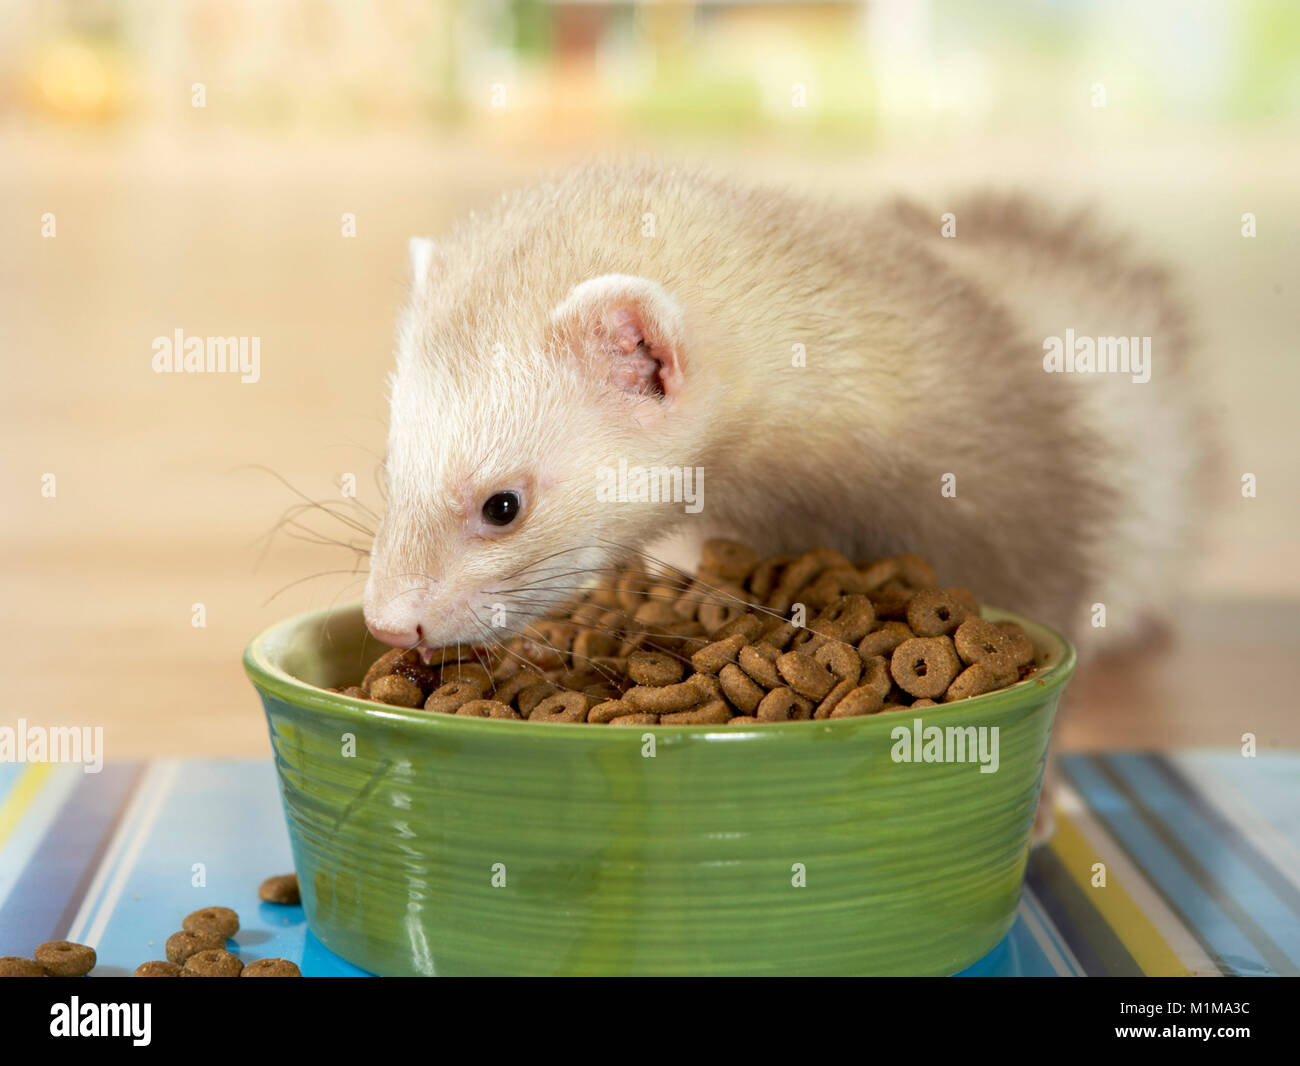 D'amérique (Mustela putorius furo) complète à sec de manger des aliments provenant d'un bol de nourriture. Allemagne Banque D'Images